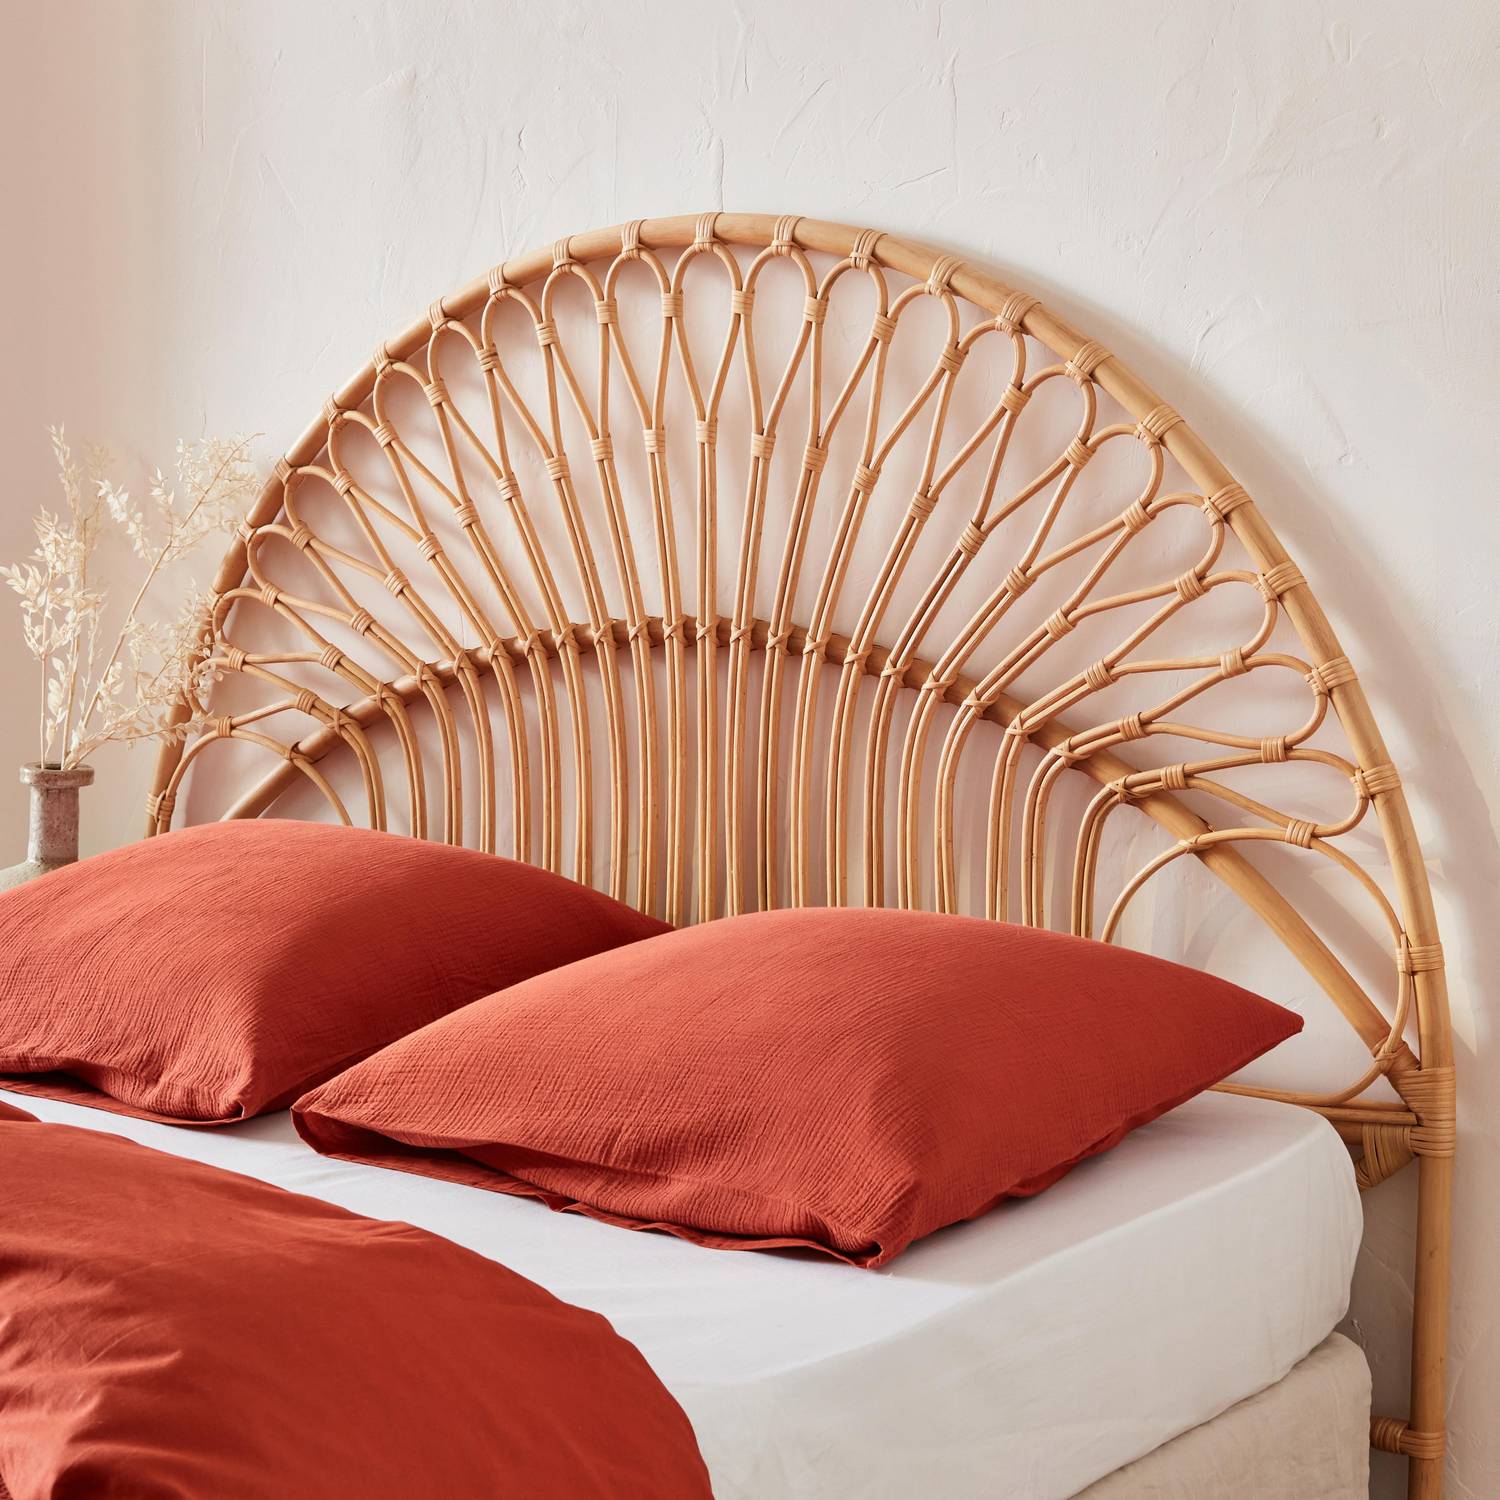 Kopfteil aus Rattan Natur passend für Betten mit einer Breite von 160 cm, B 160 x T 3 x H 130 cm Photo1